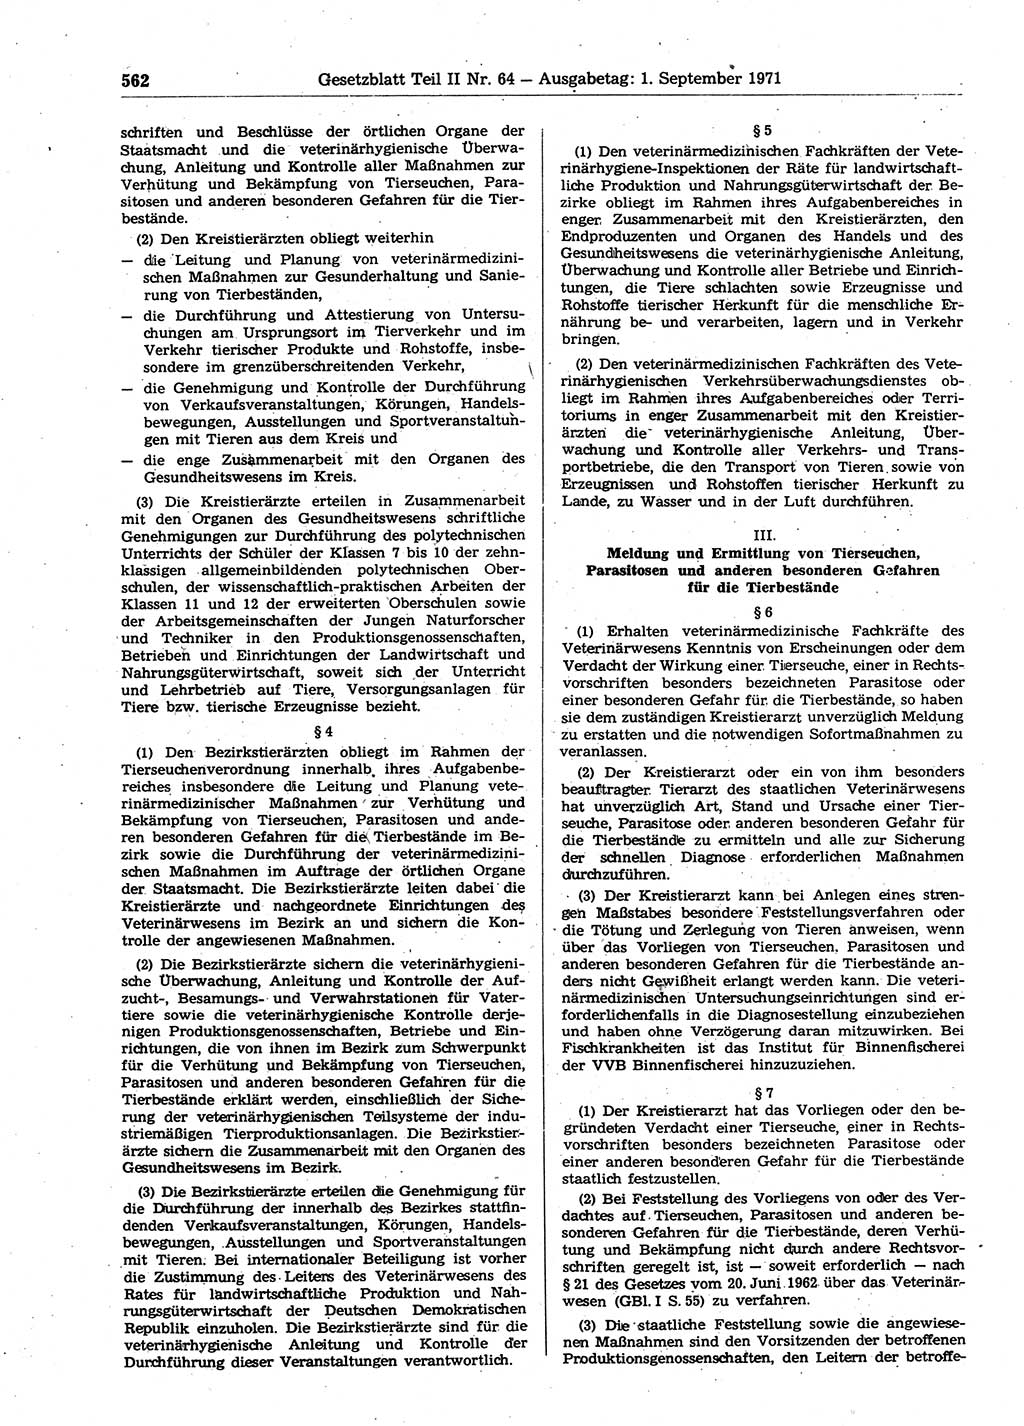 Gesetzblatt (GBl.) der Deutschen Demokratischen Republik (DDR) Teil ⅠⅠ 1971, Seite 562 (GBl. DDR ⅠⅠ 1971, S. 562)